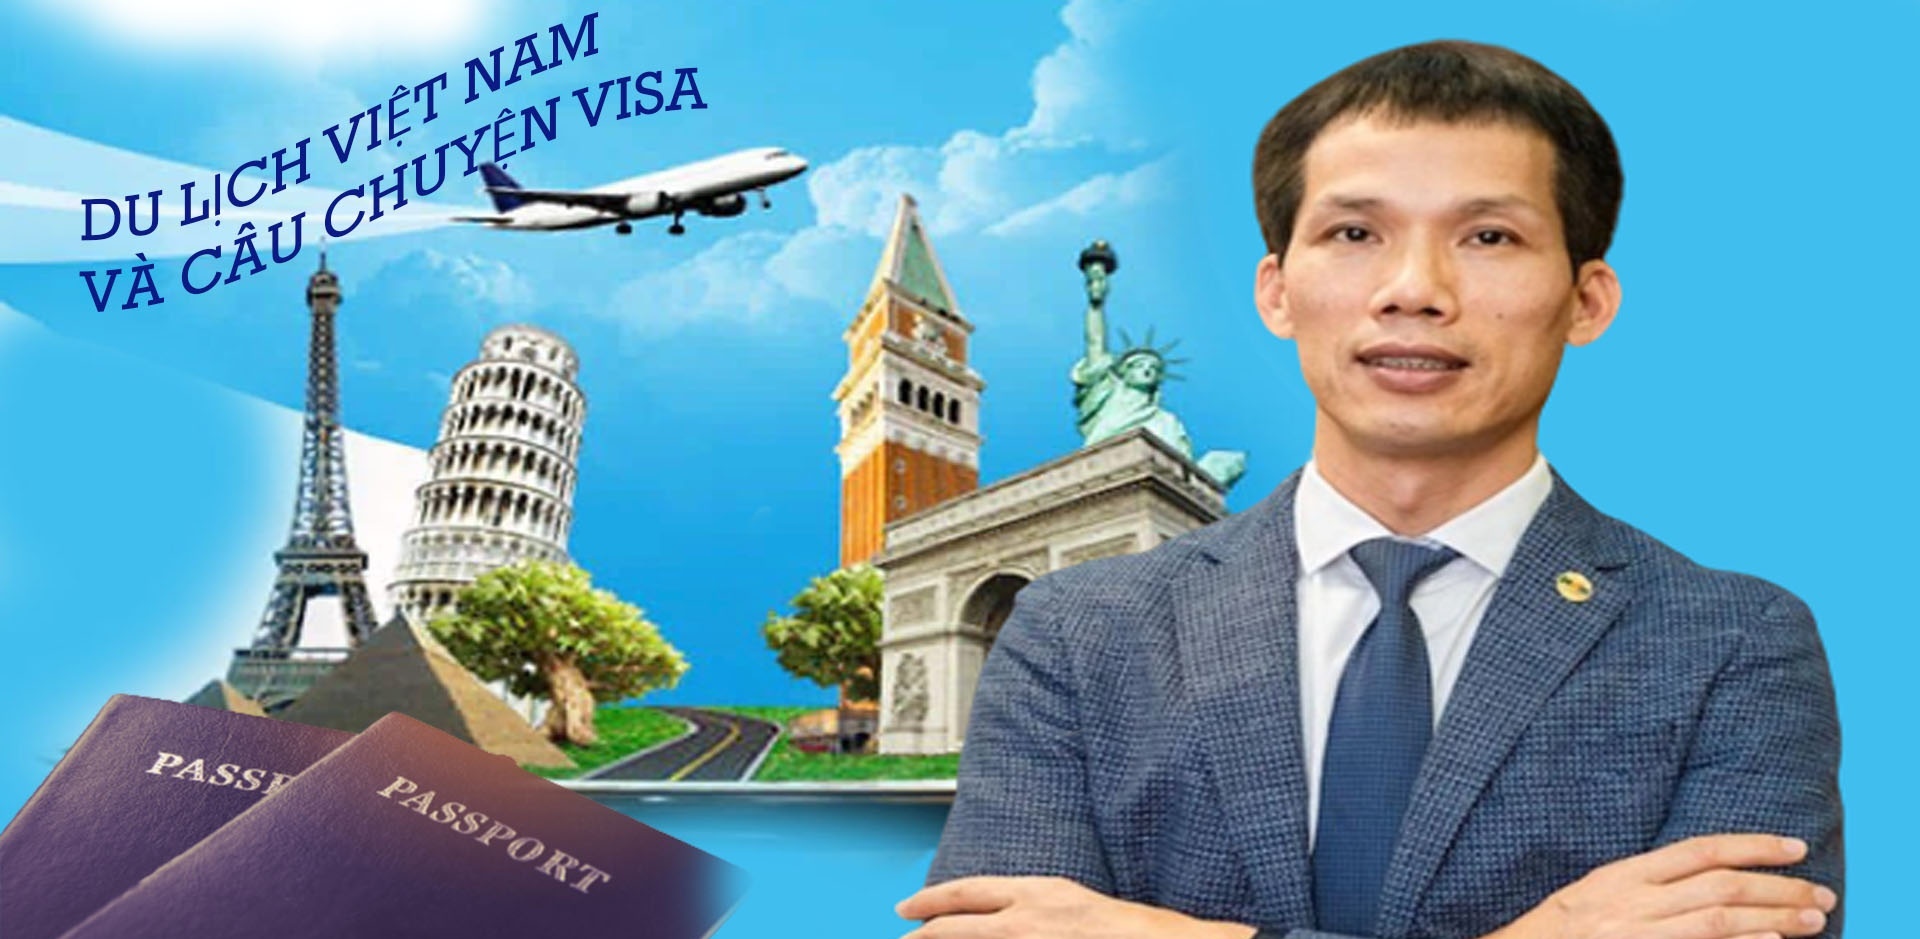 Chủ tịch Tập đoàn CEO Group: Cần có chính sách cho phép du khách miễn visa đến Việt Nam